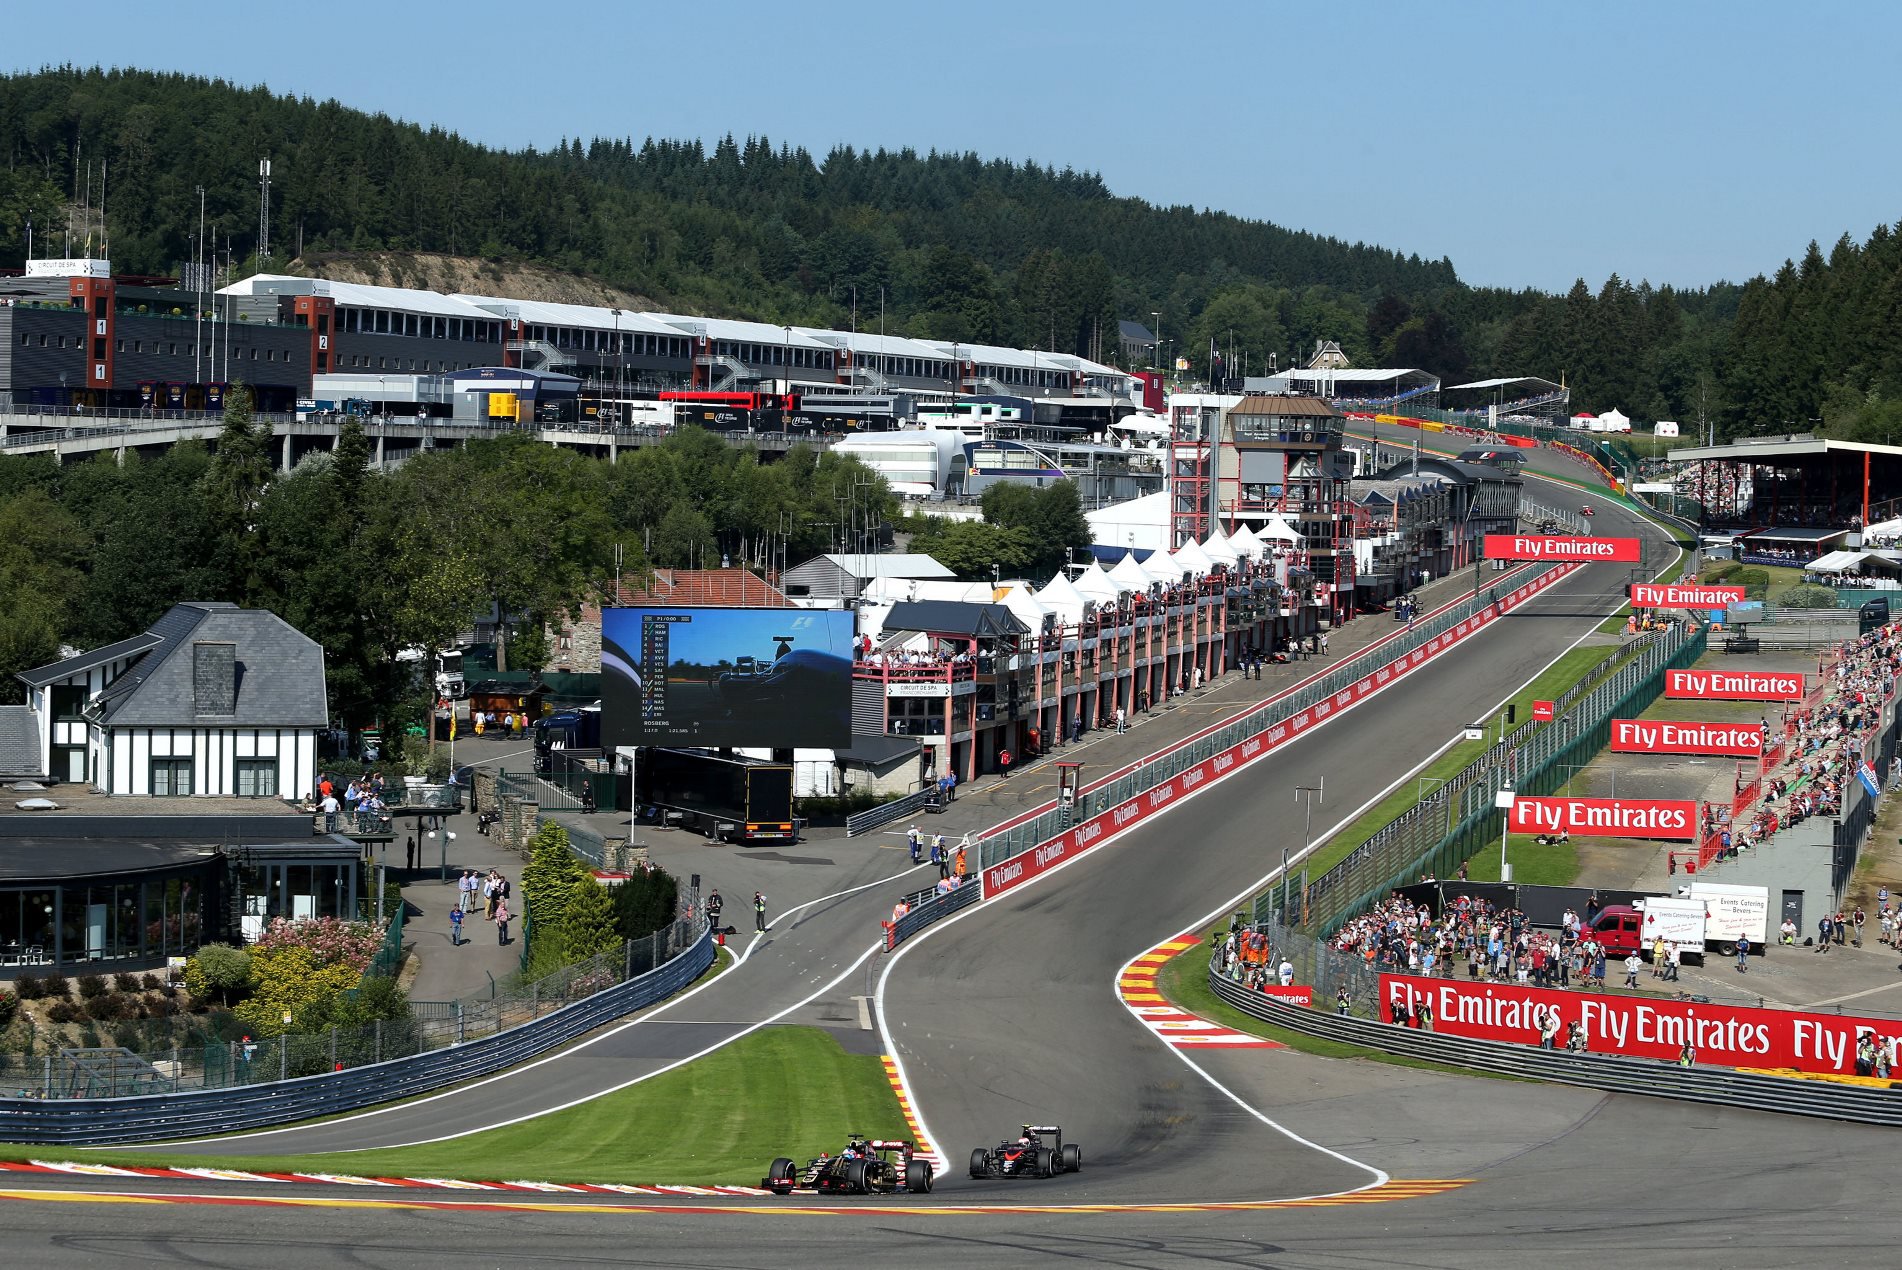 Monoposty stájí Lotus a McLaren při přípravě na GP Belgie 2015 na slavném okruhu Spa-Francorchamps